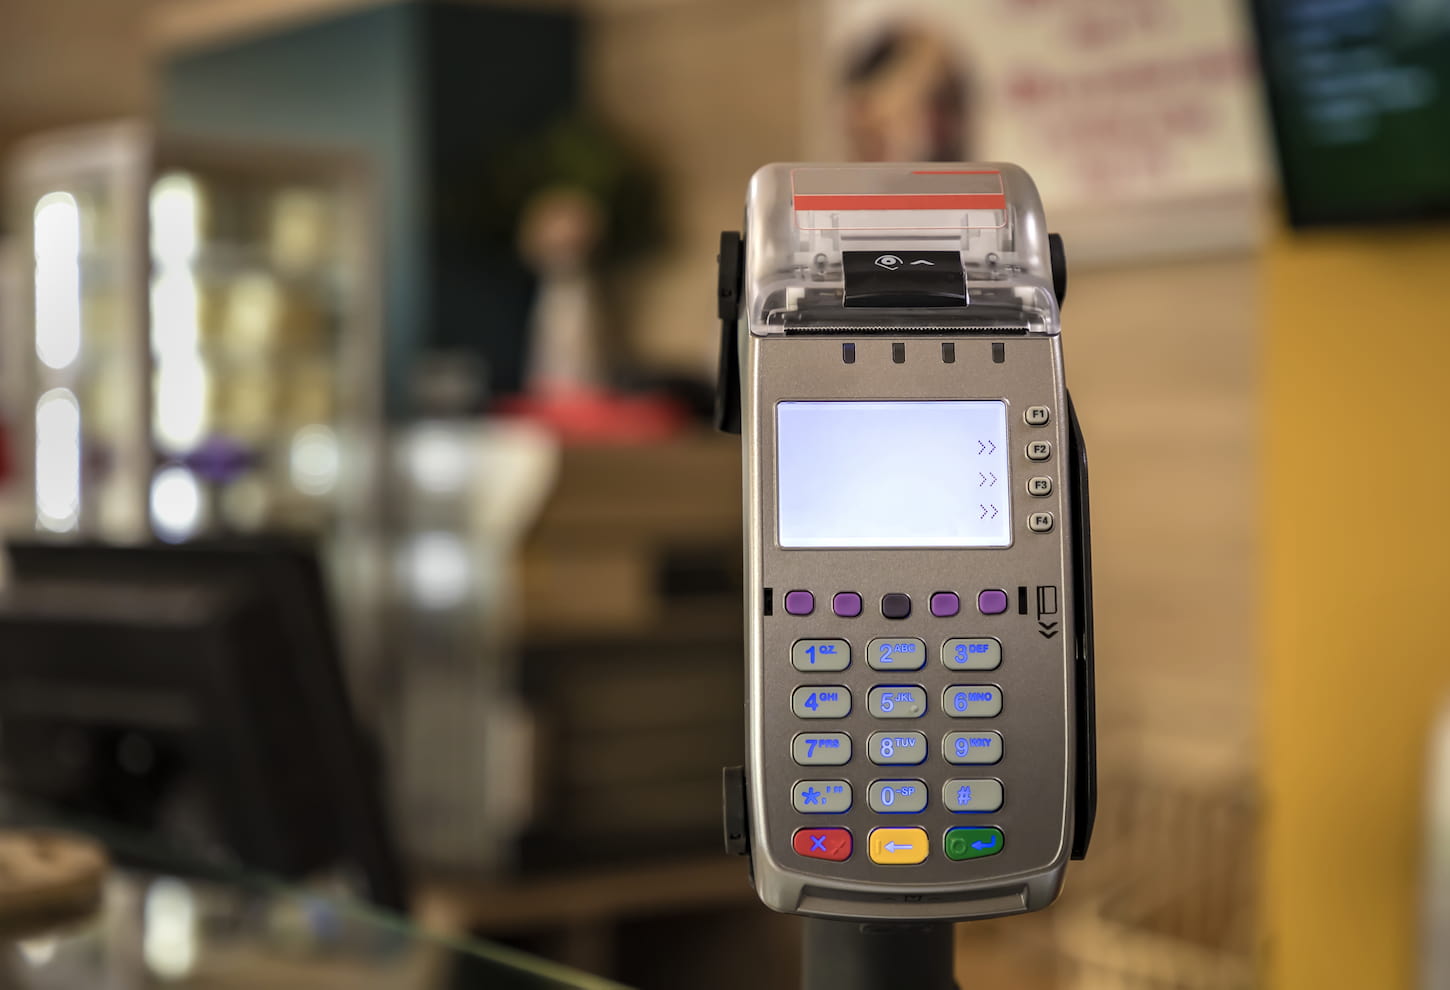 An image of a card payment terminal POS terminal at a shop.